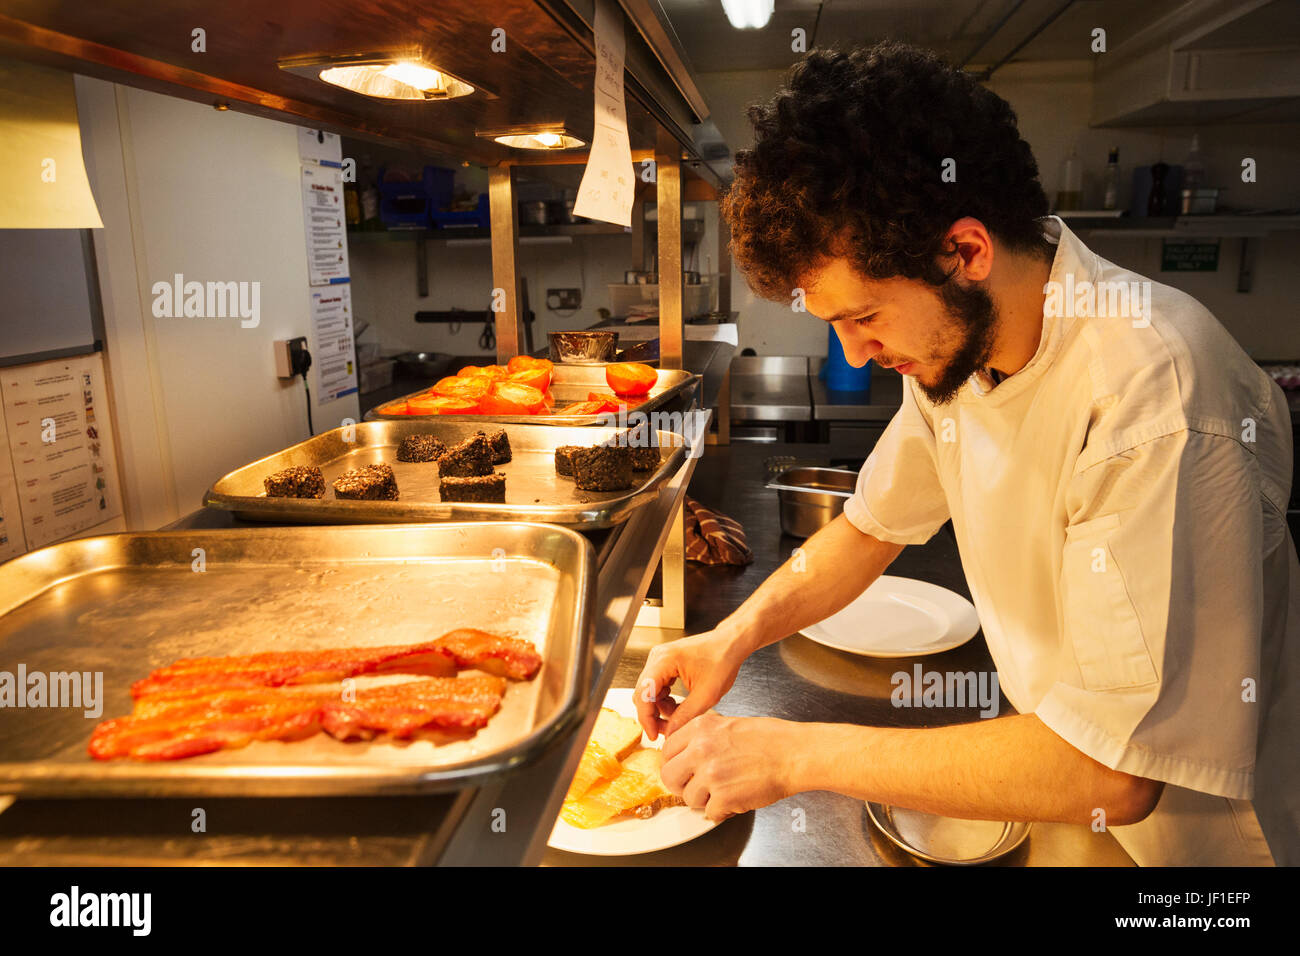 Koch in einer Restaurantküche bei einem Zähler Beschichtung Essen, Tabletts mit Speck, Blutwurst und gegrillten Tomaten stehen. Stockfoto